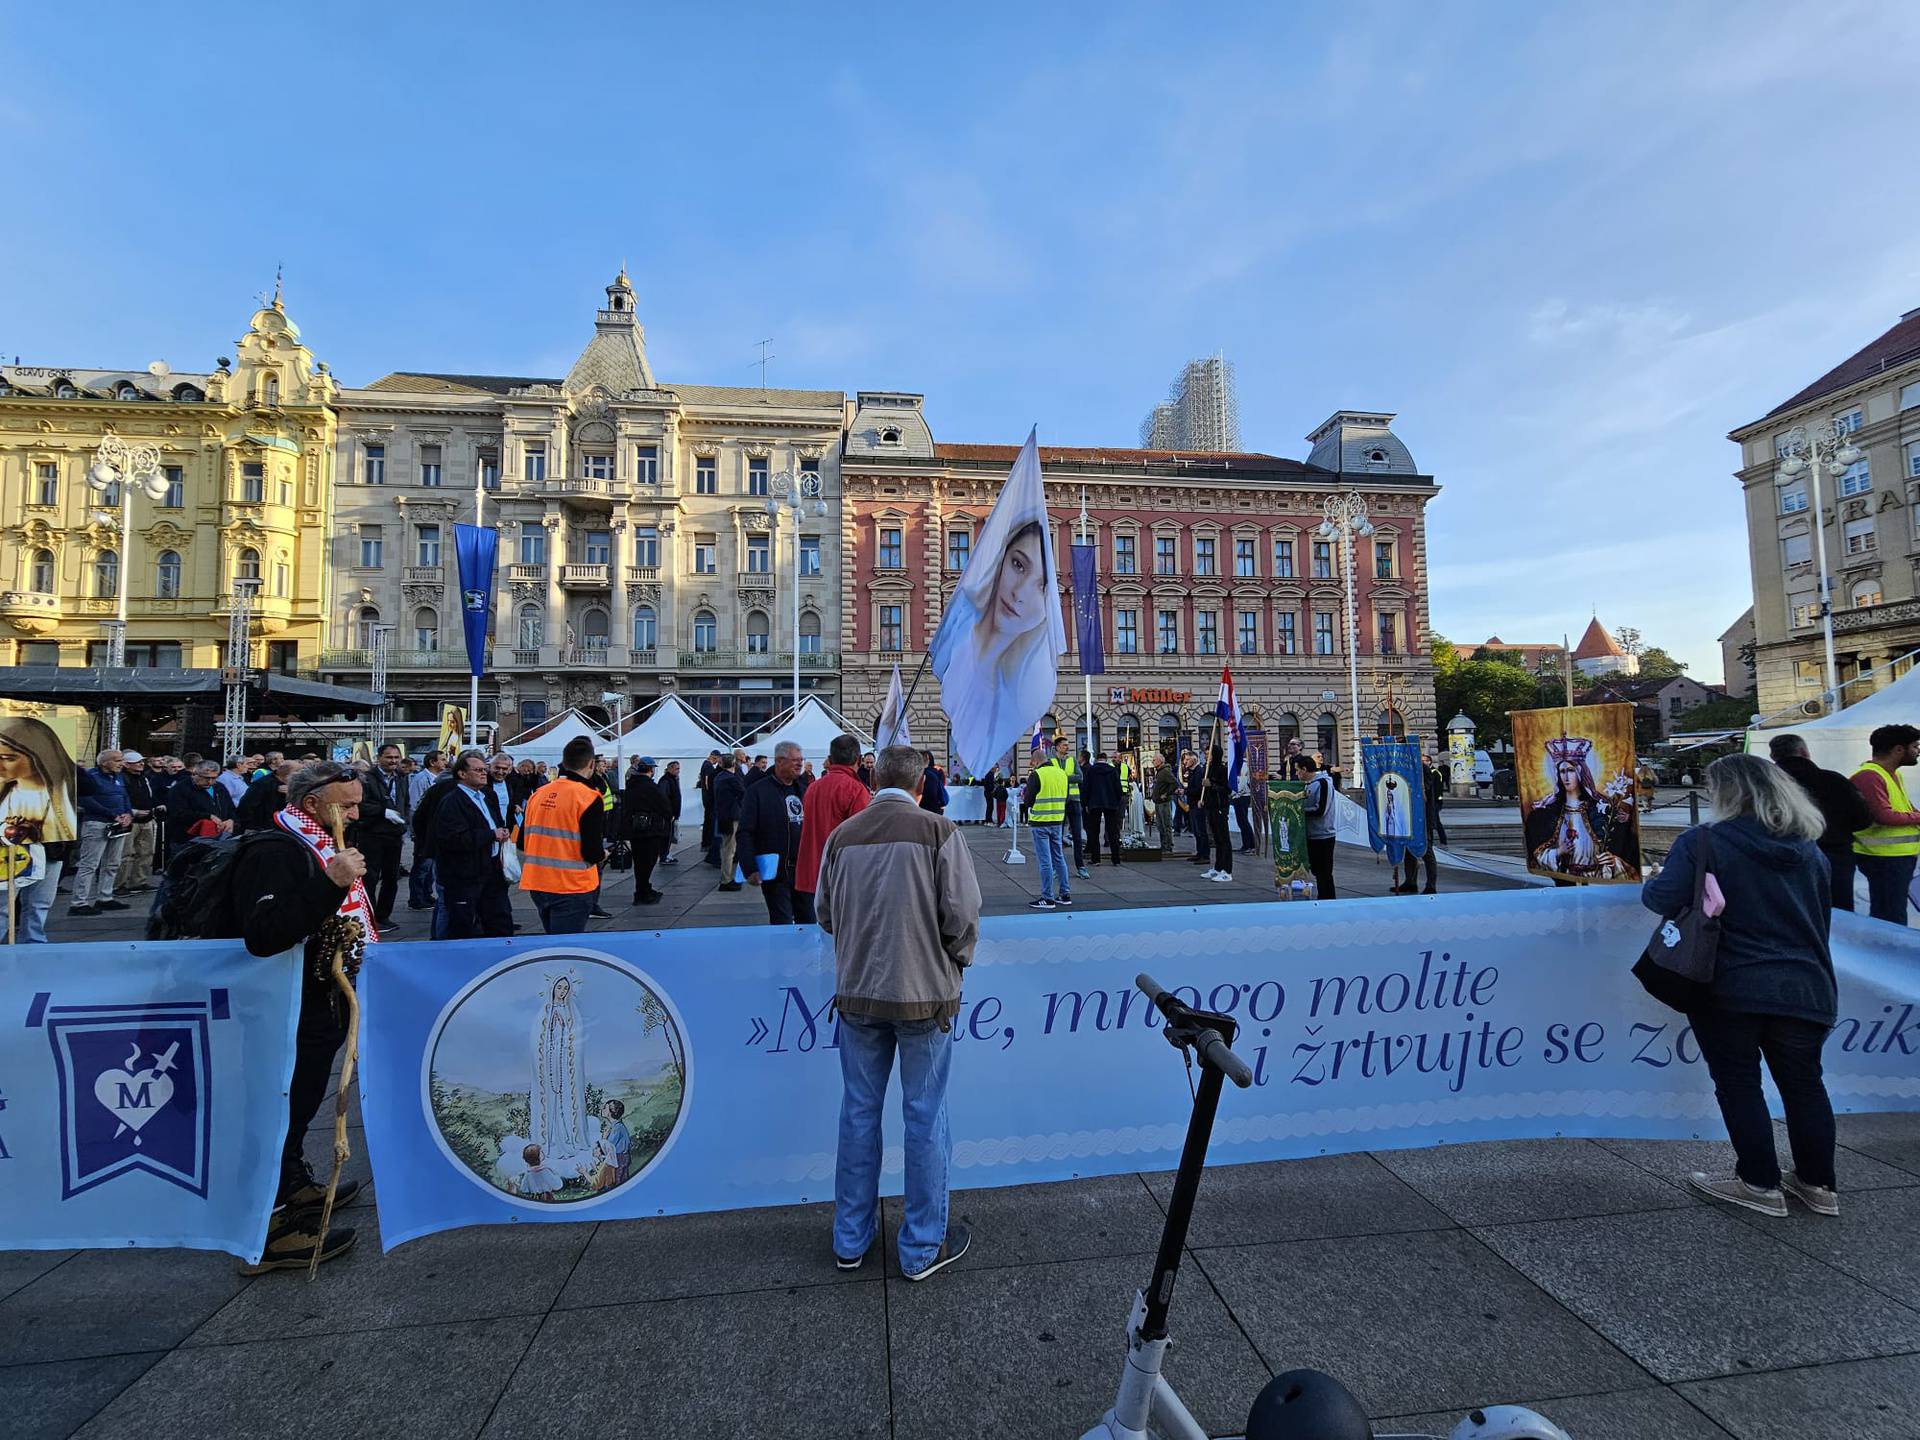 Završena molitva na Trgu, okupili se i kontraprosvjednici: 'Slobodne smo i ravnopravne'